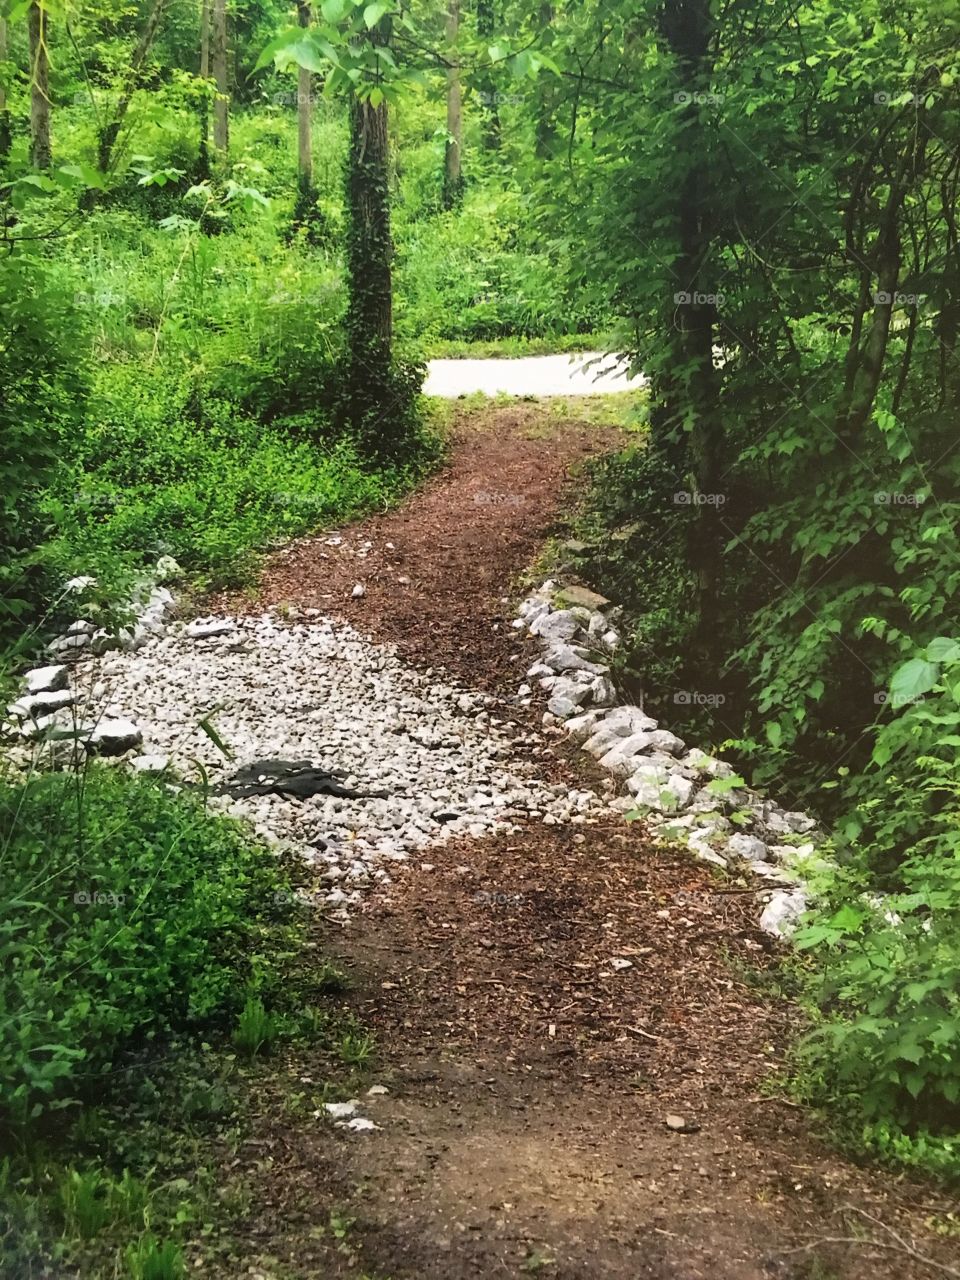 A rock strewn path